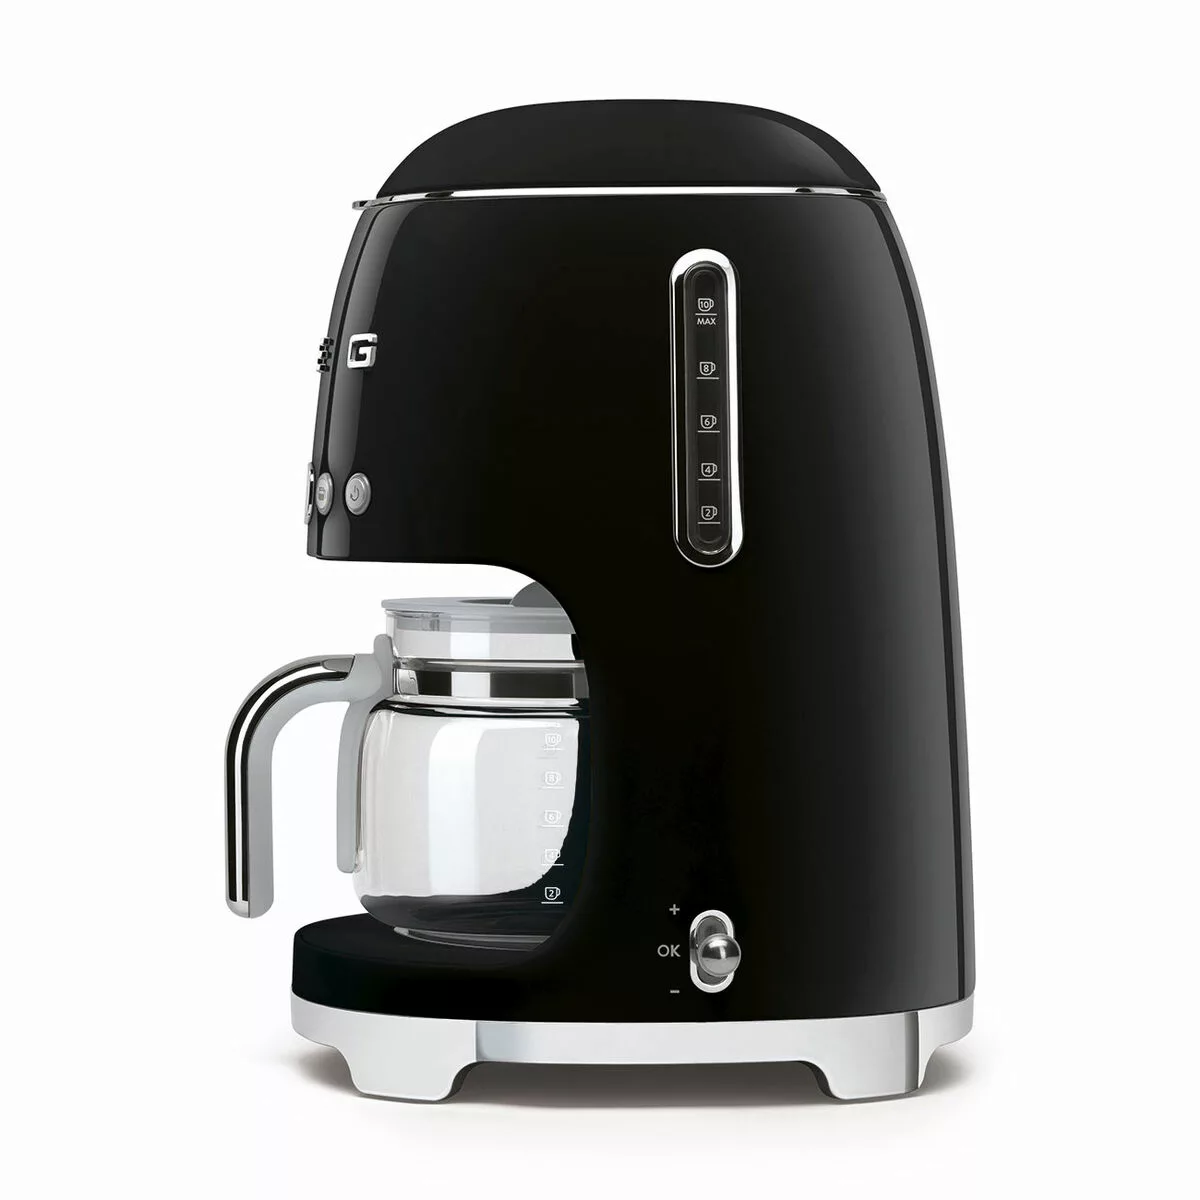 Smeg - DCF02 Filterkaffeemaschine - schwarz/lackiert/BxHxT 25,6x36,1x24,5cm günstig online kaufen